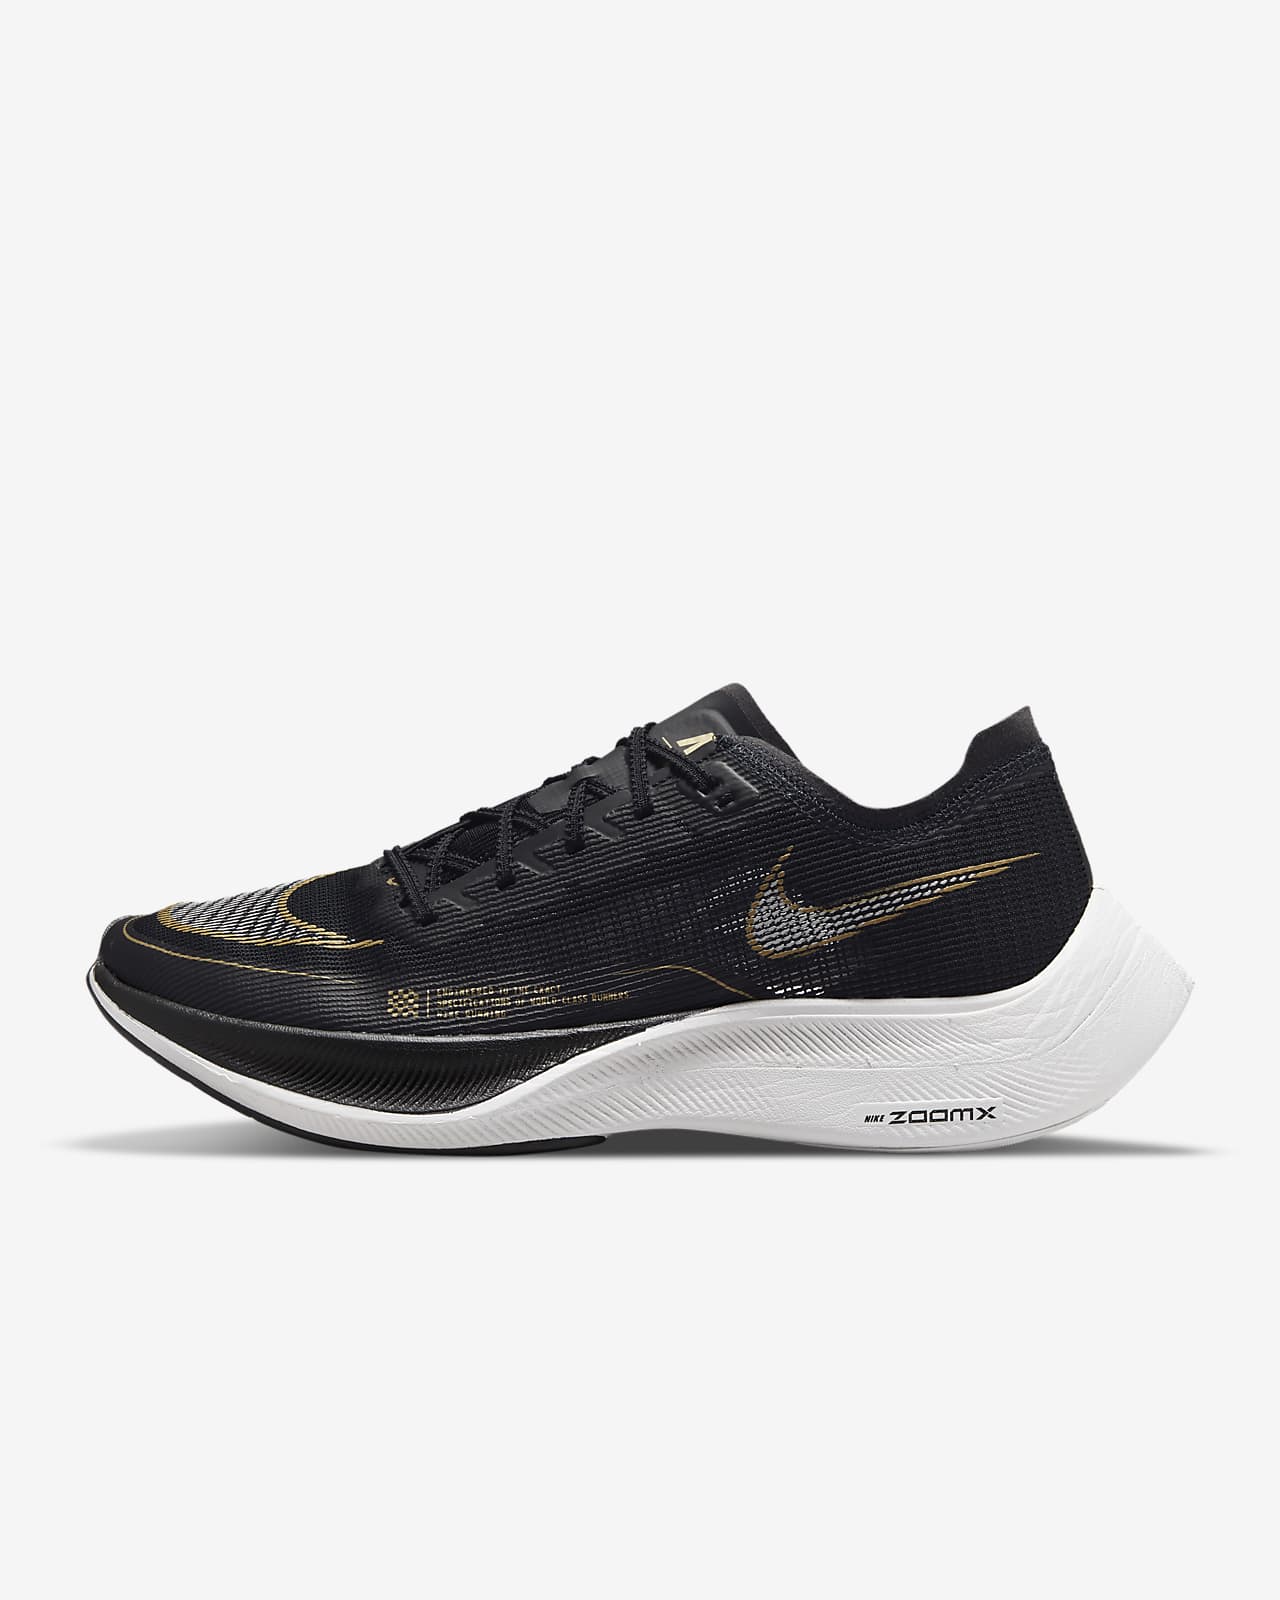 Nike ZoomX Vaporfly Next% 2 男子跑步鞋